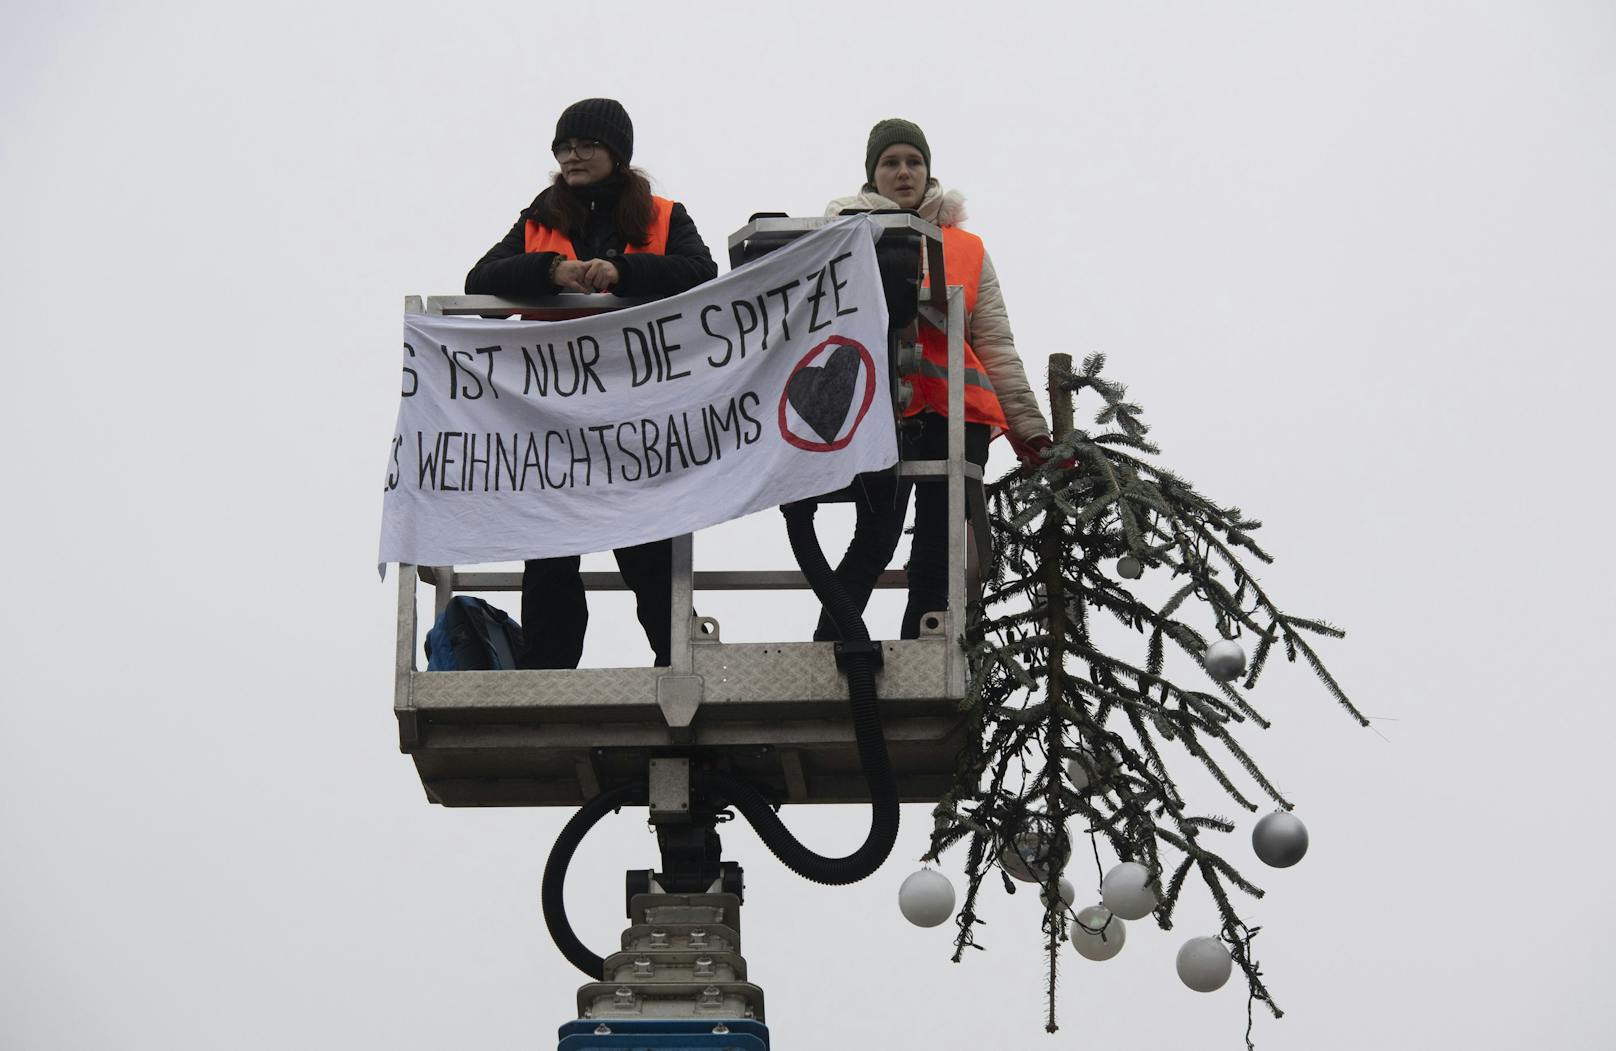 "Das ist nur die Spitze des Weihnachtsbaums", heißt es auf dem Transparent der Aktivistinnen.&nbsp;